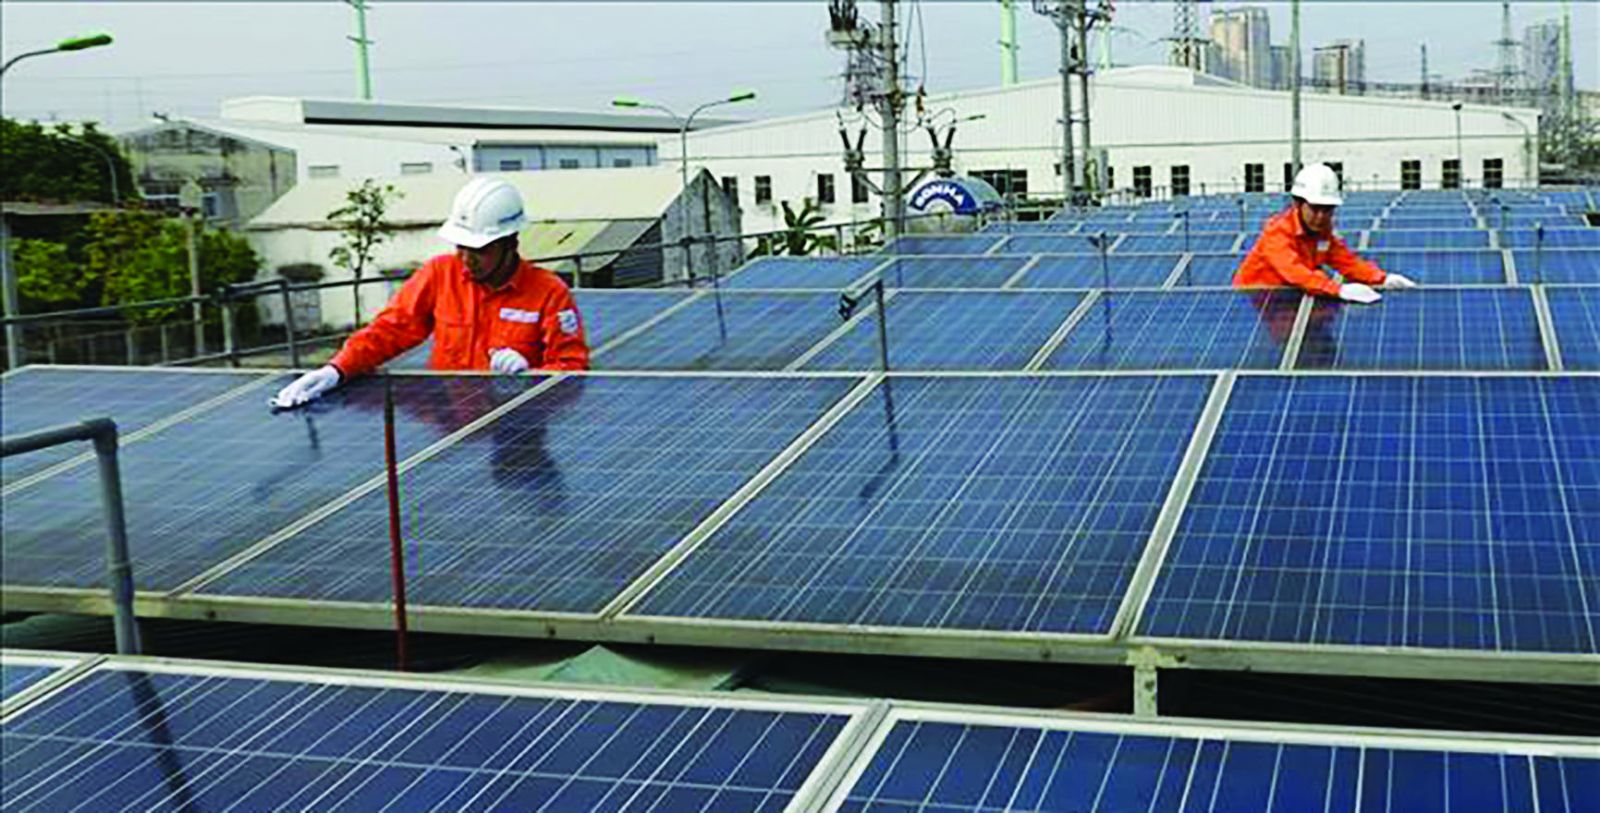 Phát triển năng lượng tái tạo nói chung và điện mặt trời nói riêng là xu hướng chung và góp phần thực hiện cam kết của Việt Nam trong lộ trình giảm phát thải.